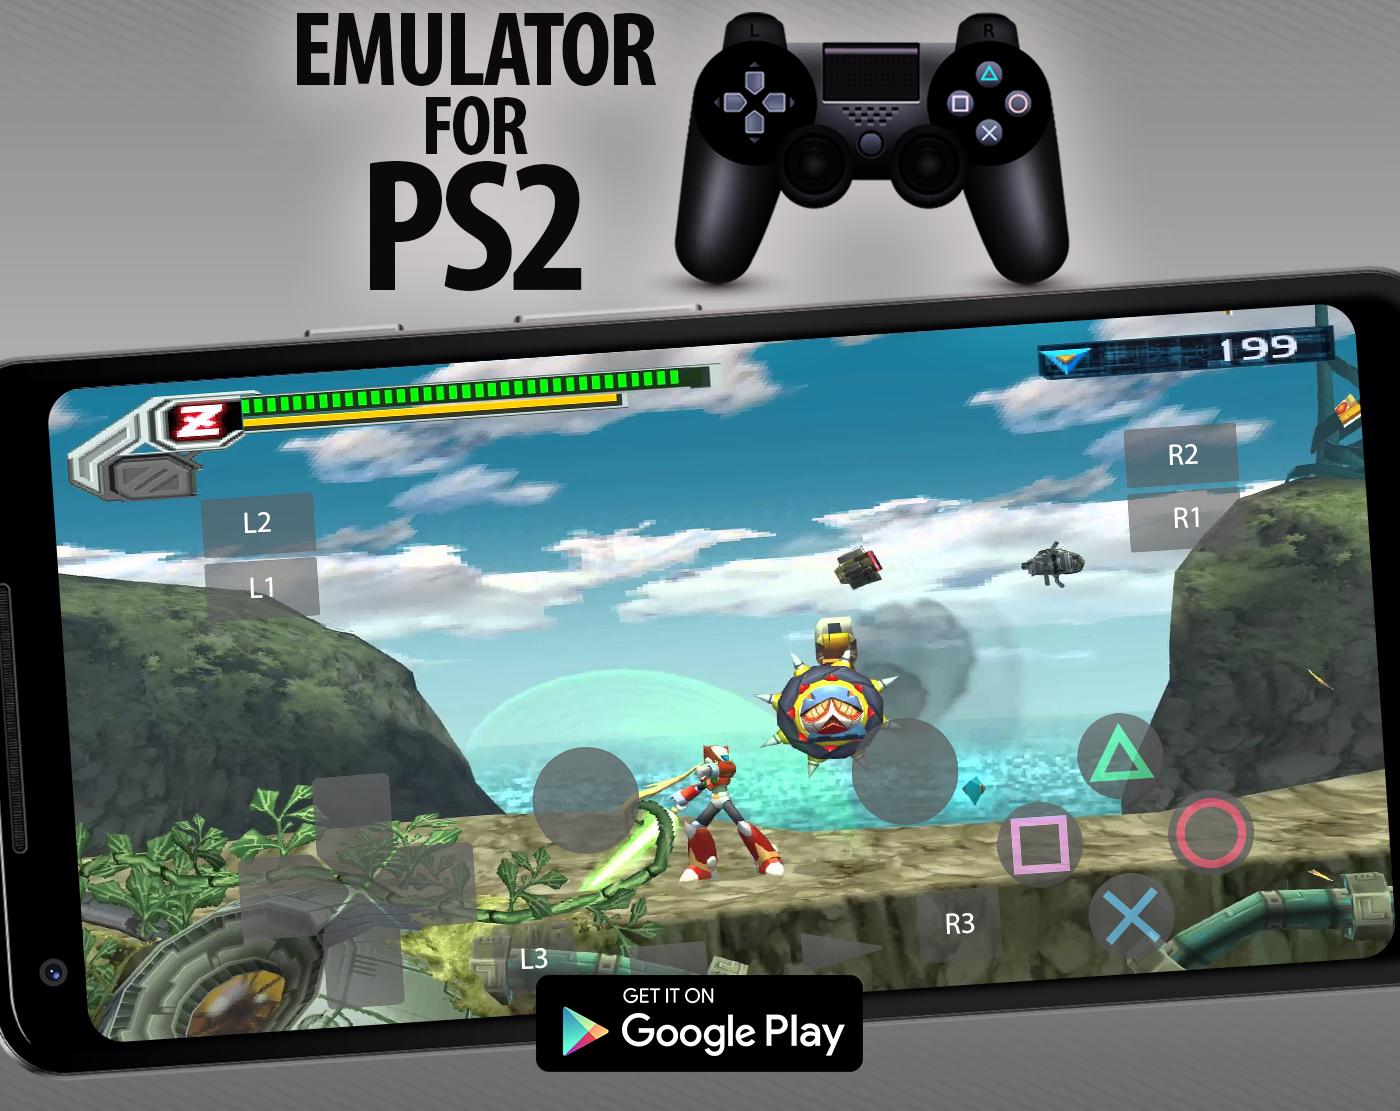 PRO PS2 Emulator - Free Emulator For PS2 ảnh chụp màn hình 11.